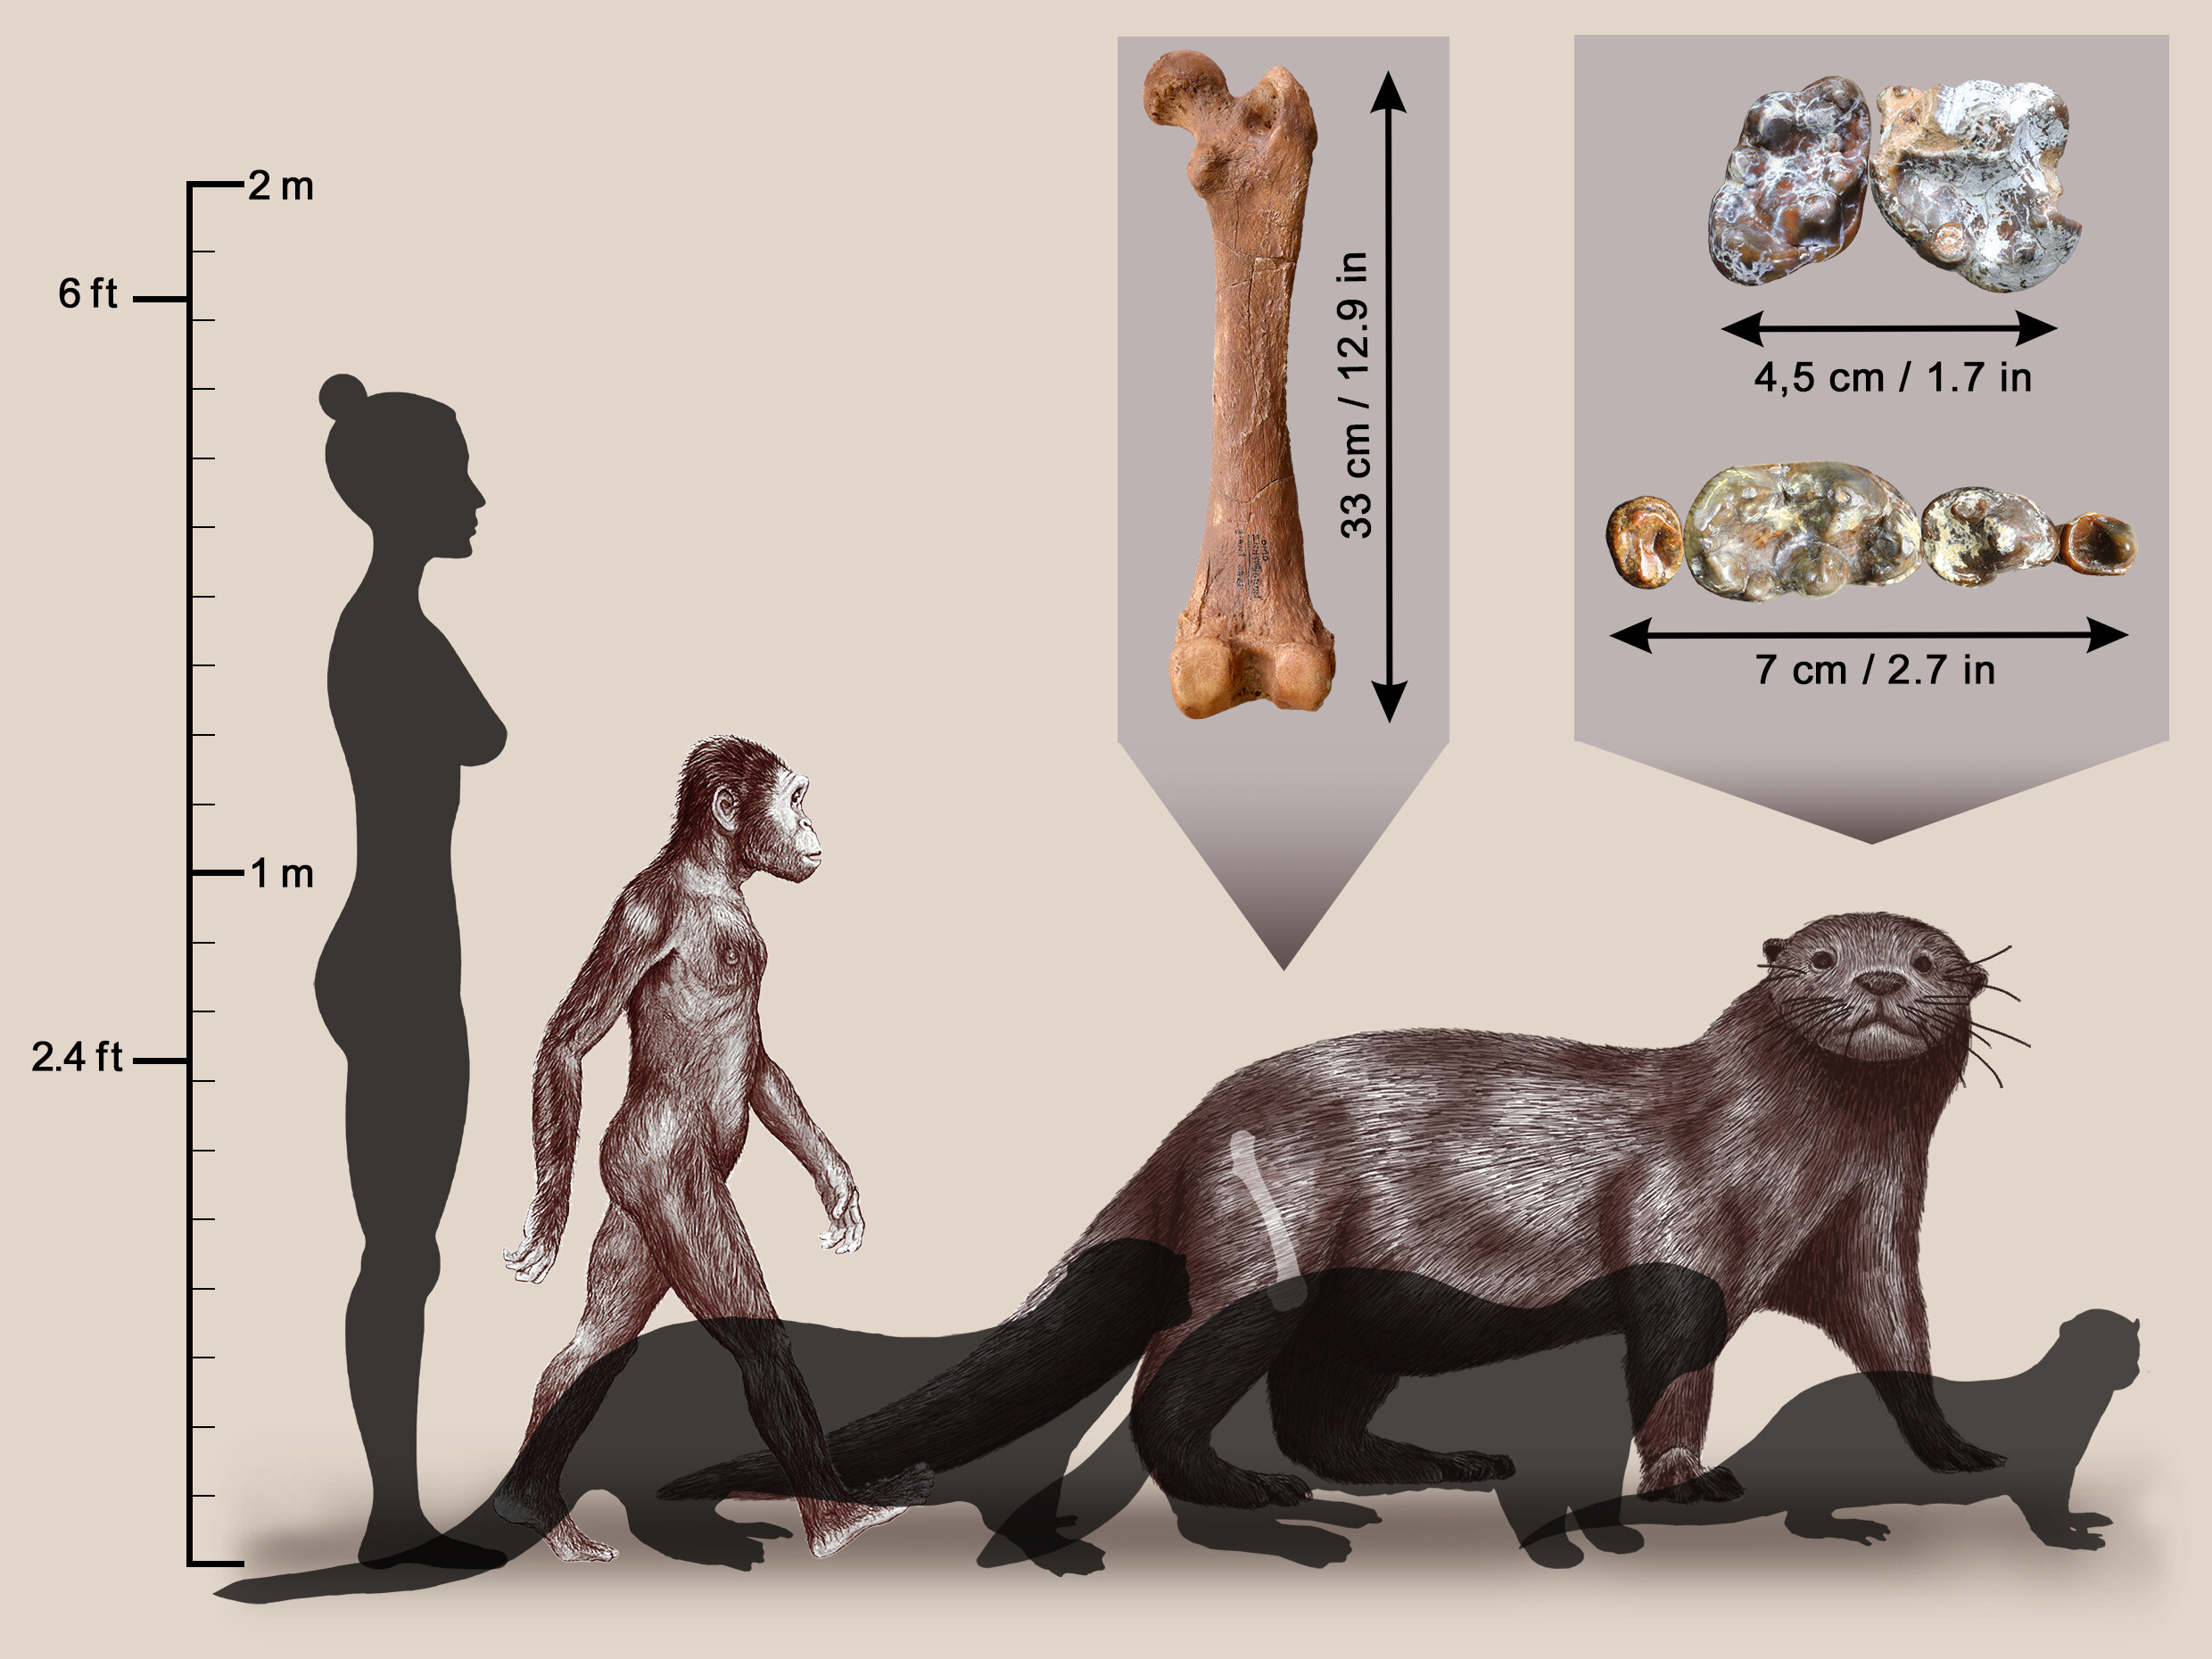 Las nutrias eran grandes como leones hace unos 3 millones de años.